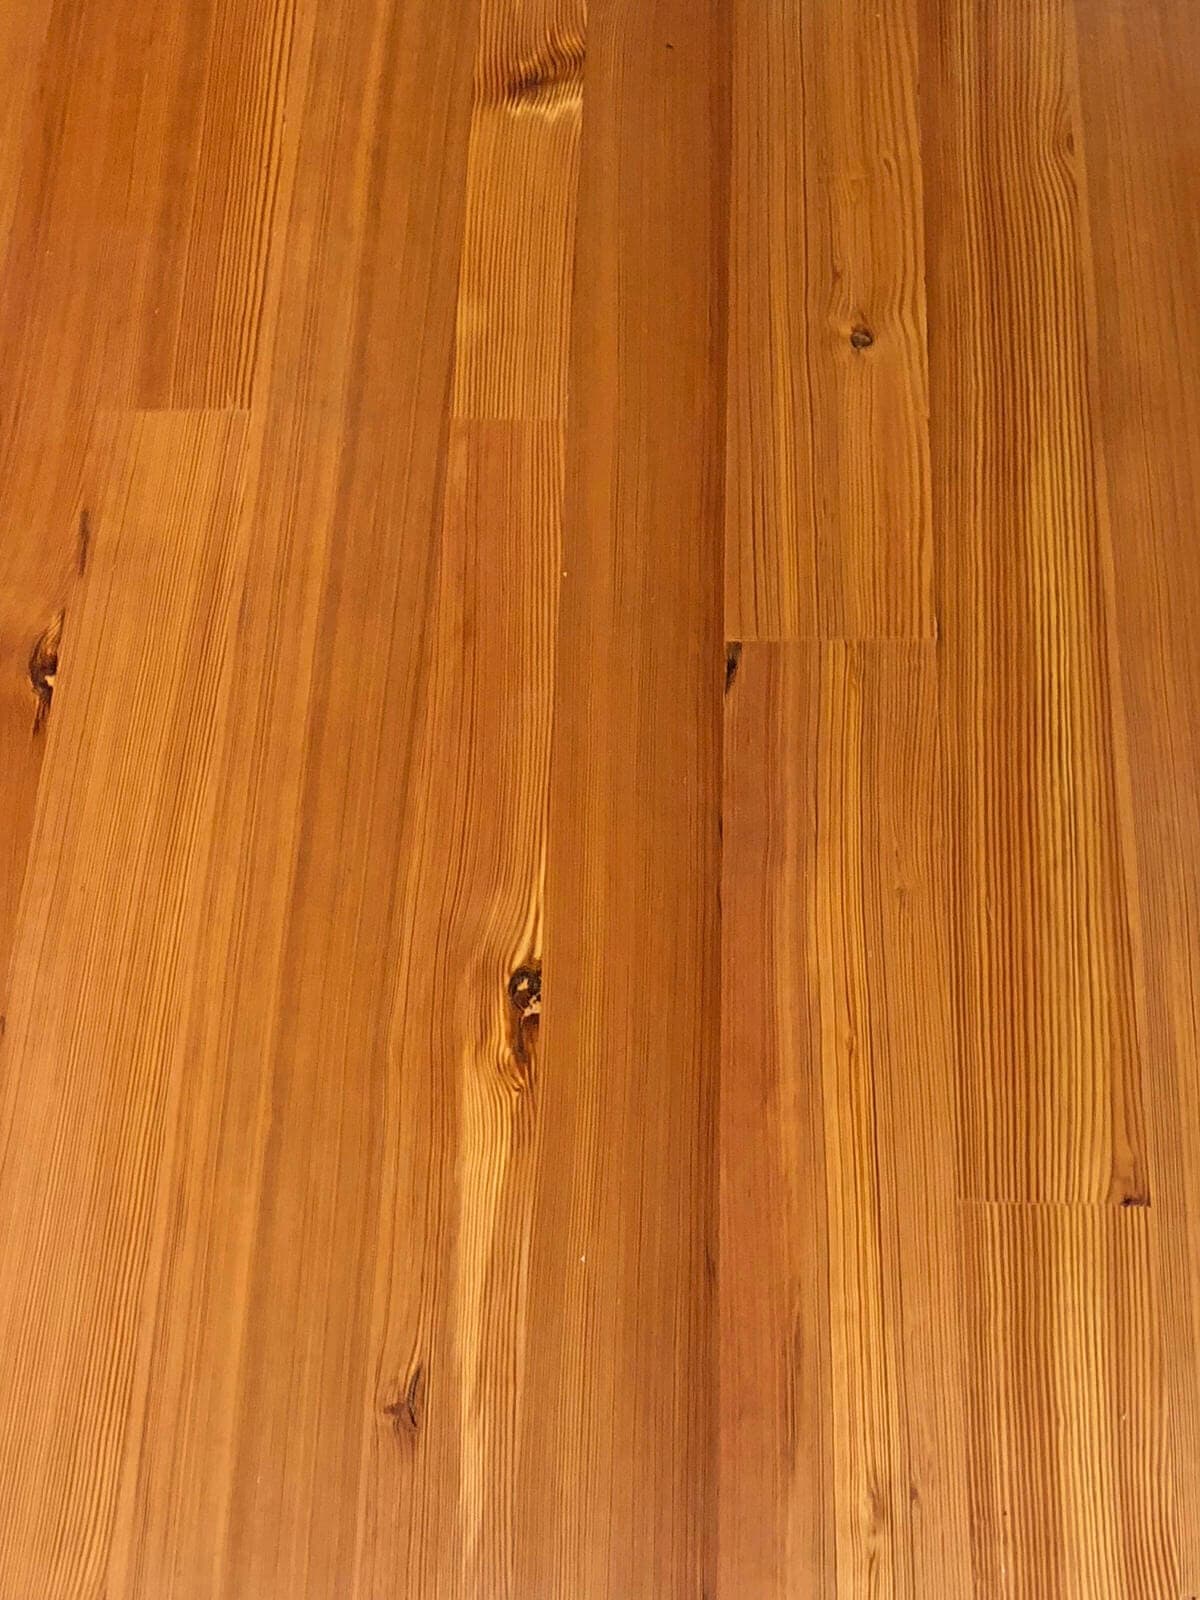 vertical grain heart pine closeup of floor planks